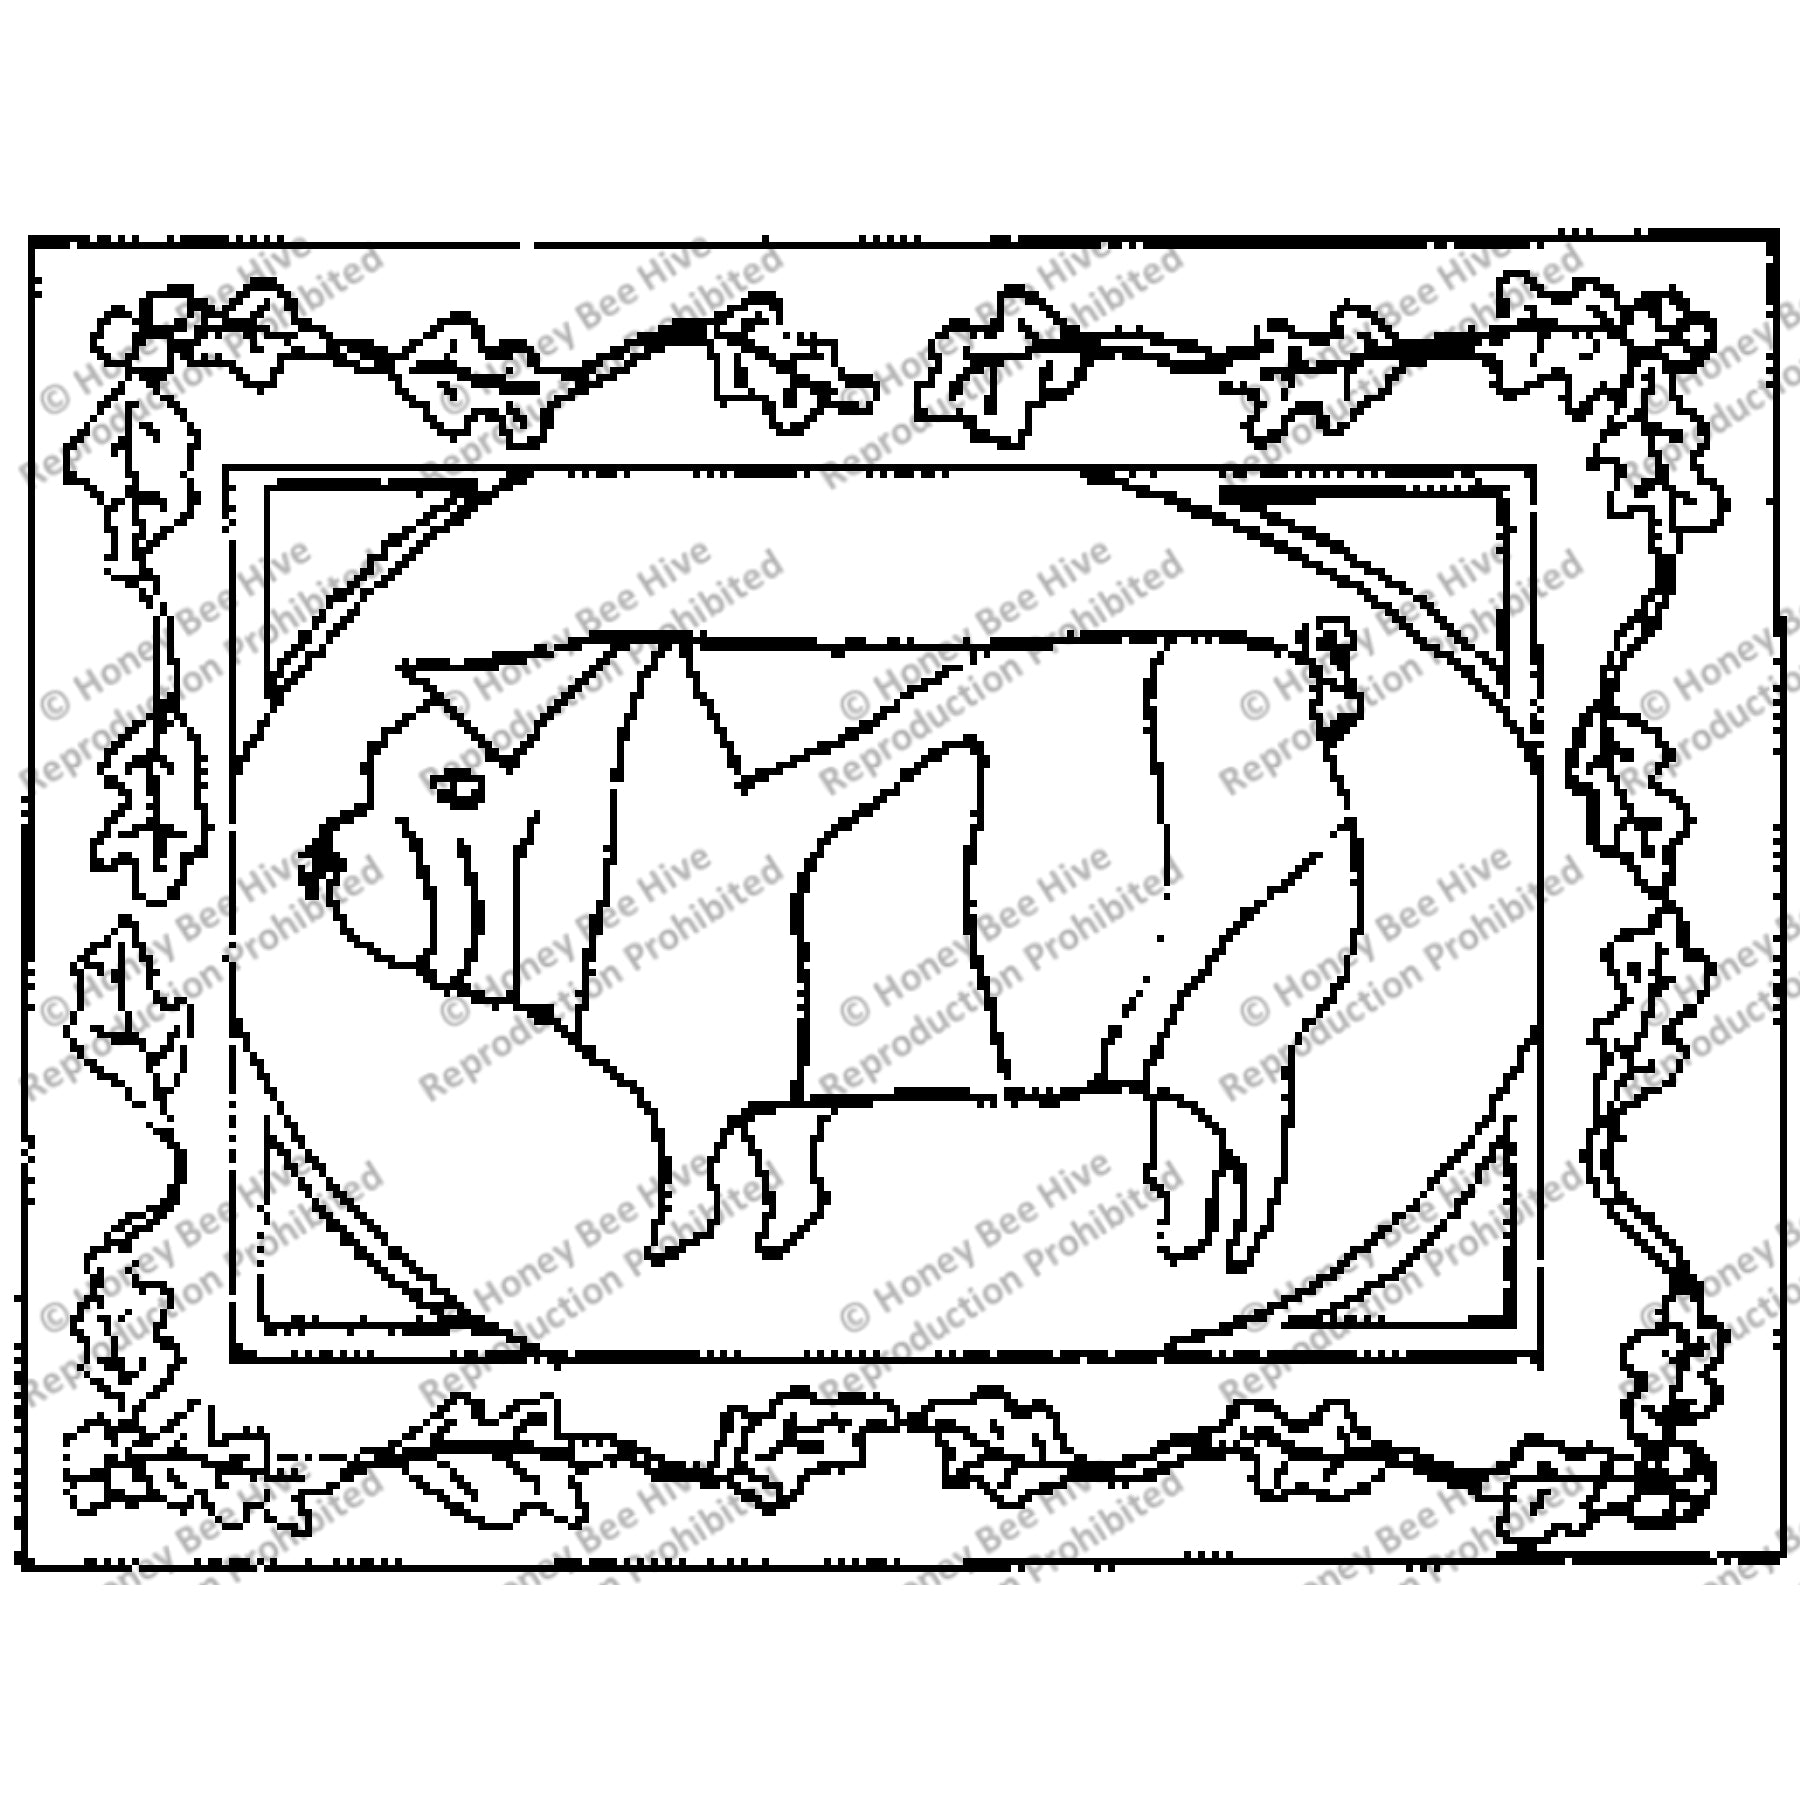 Pig, rug hooking pattern